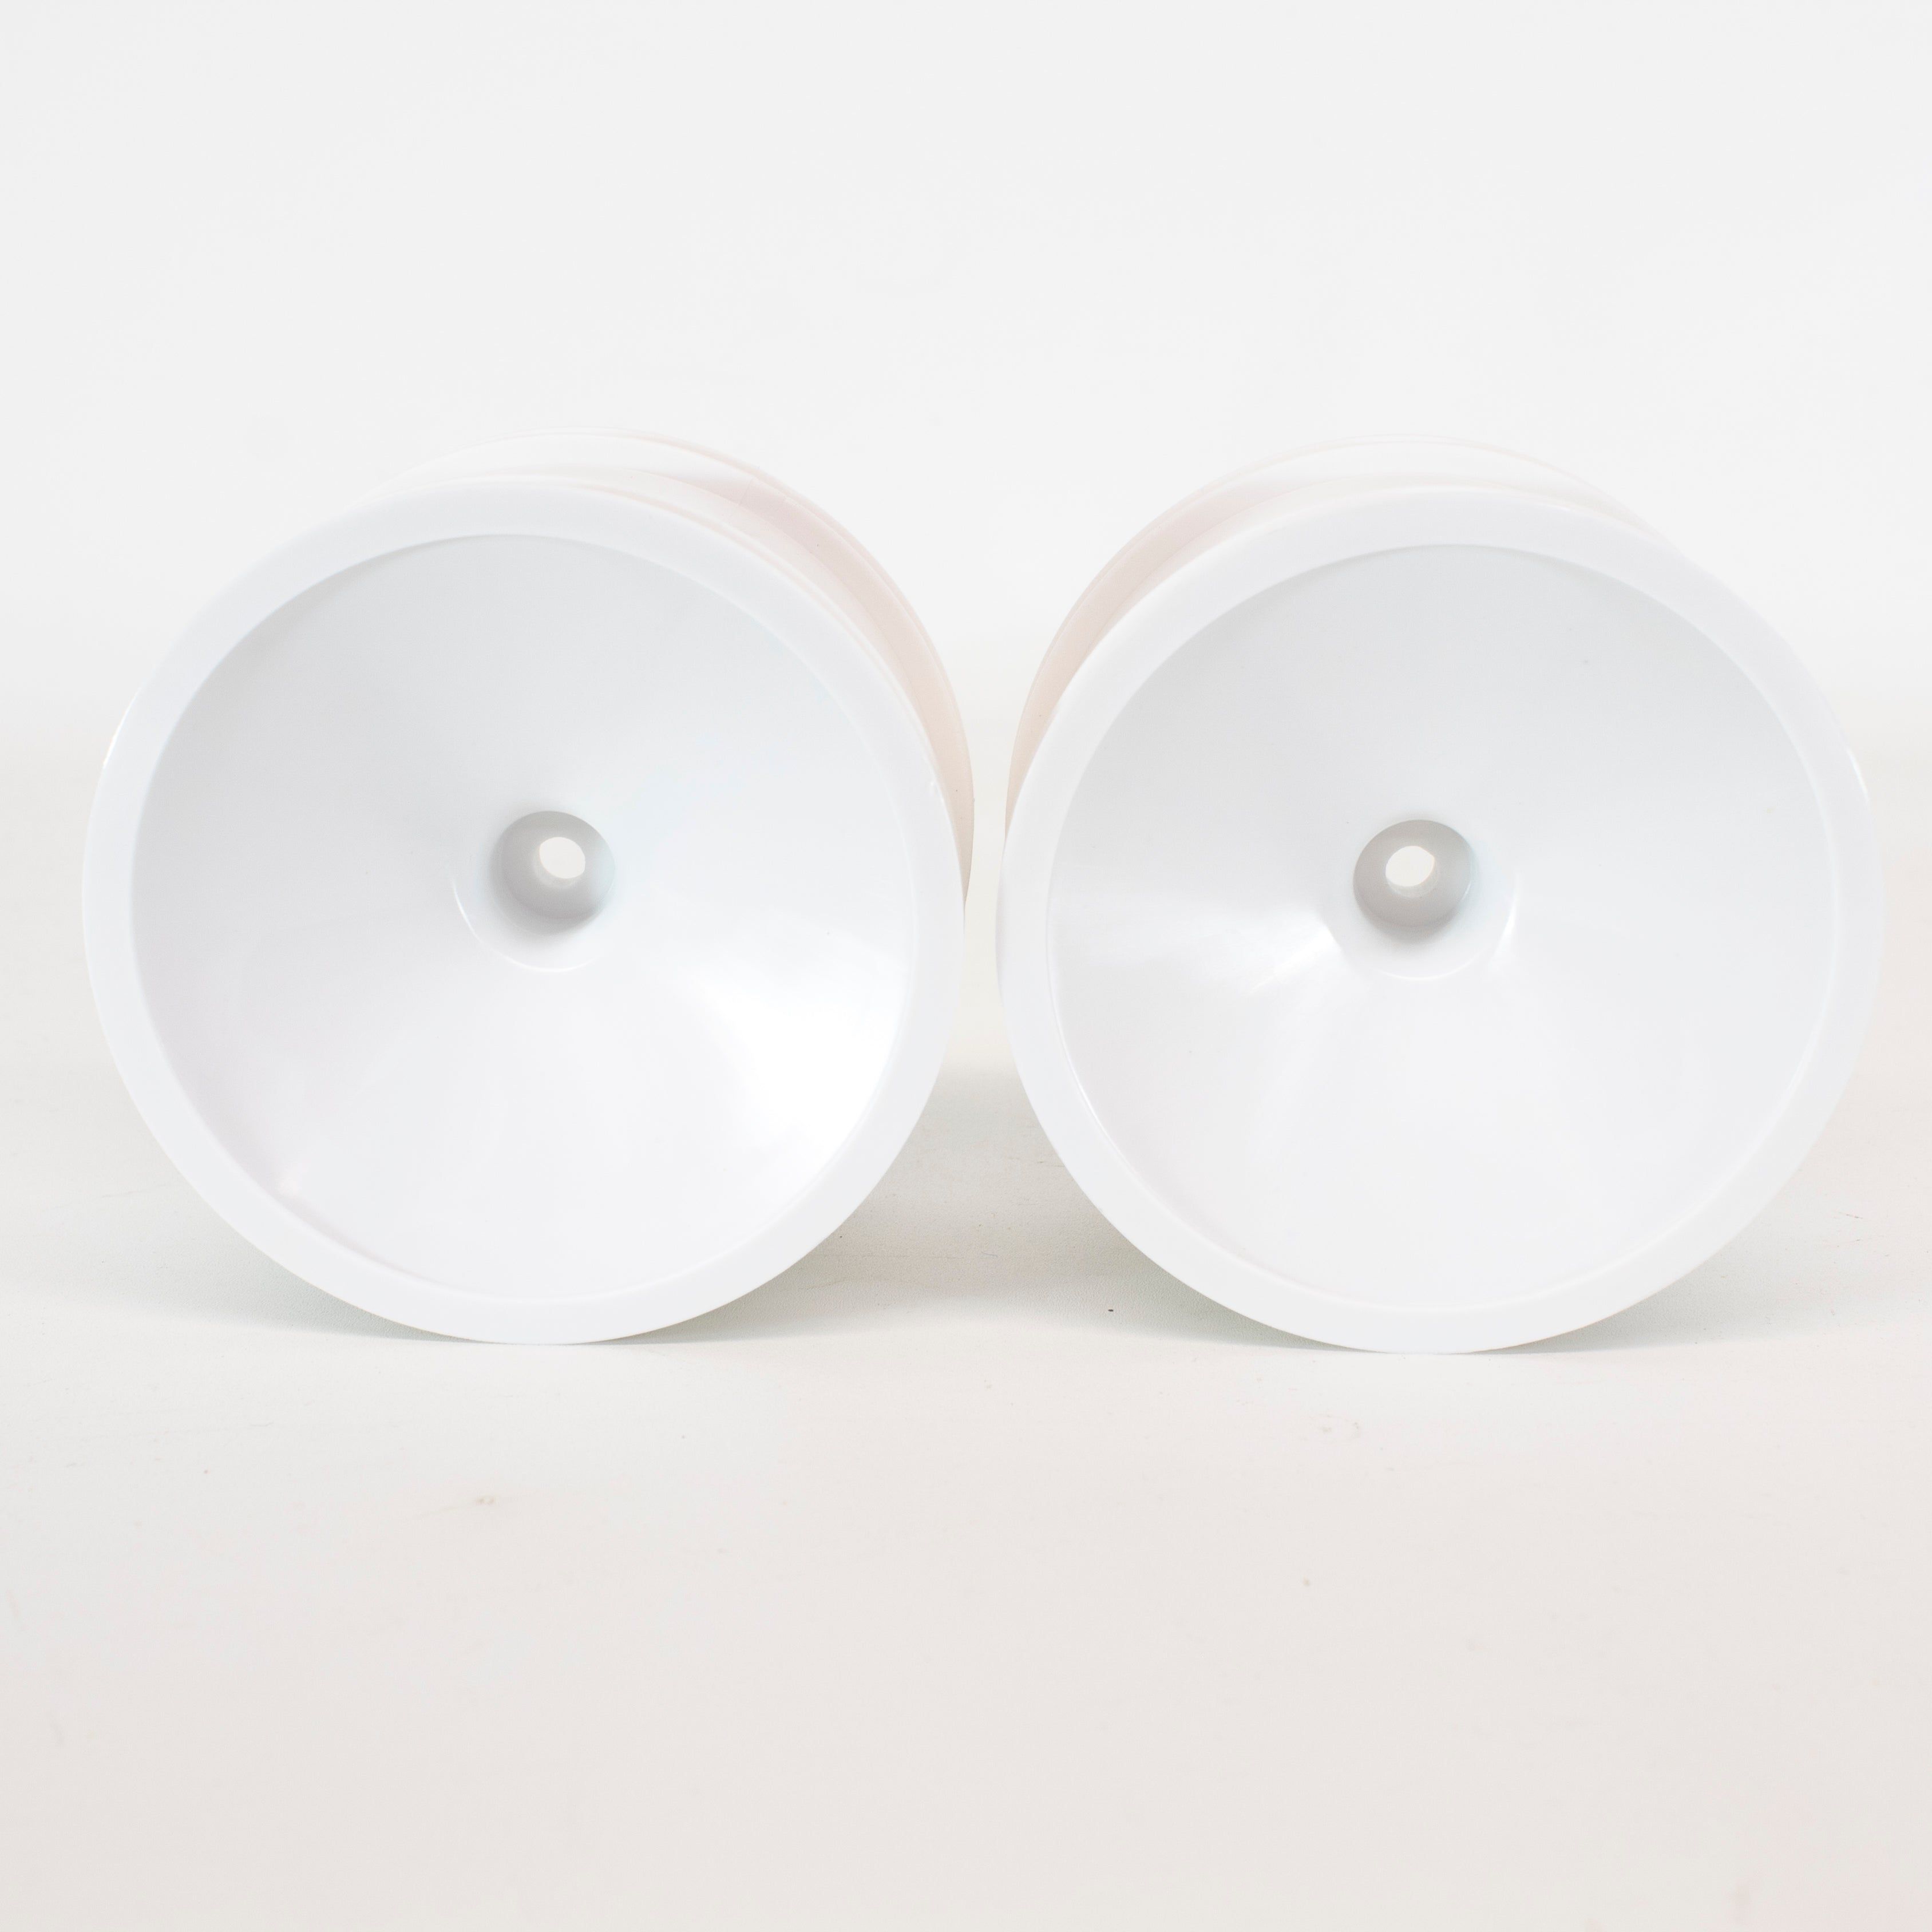 IMEX 2.8 White Dish Rims (1 pair)